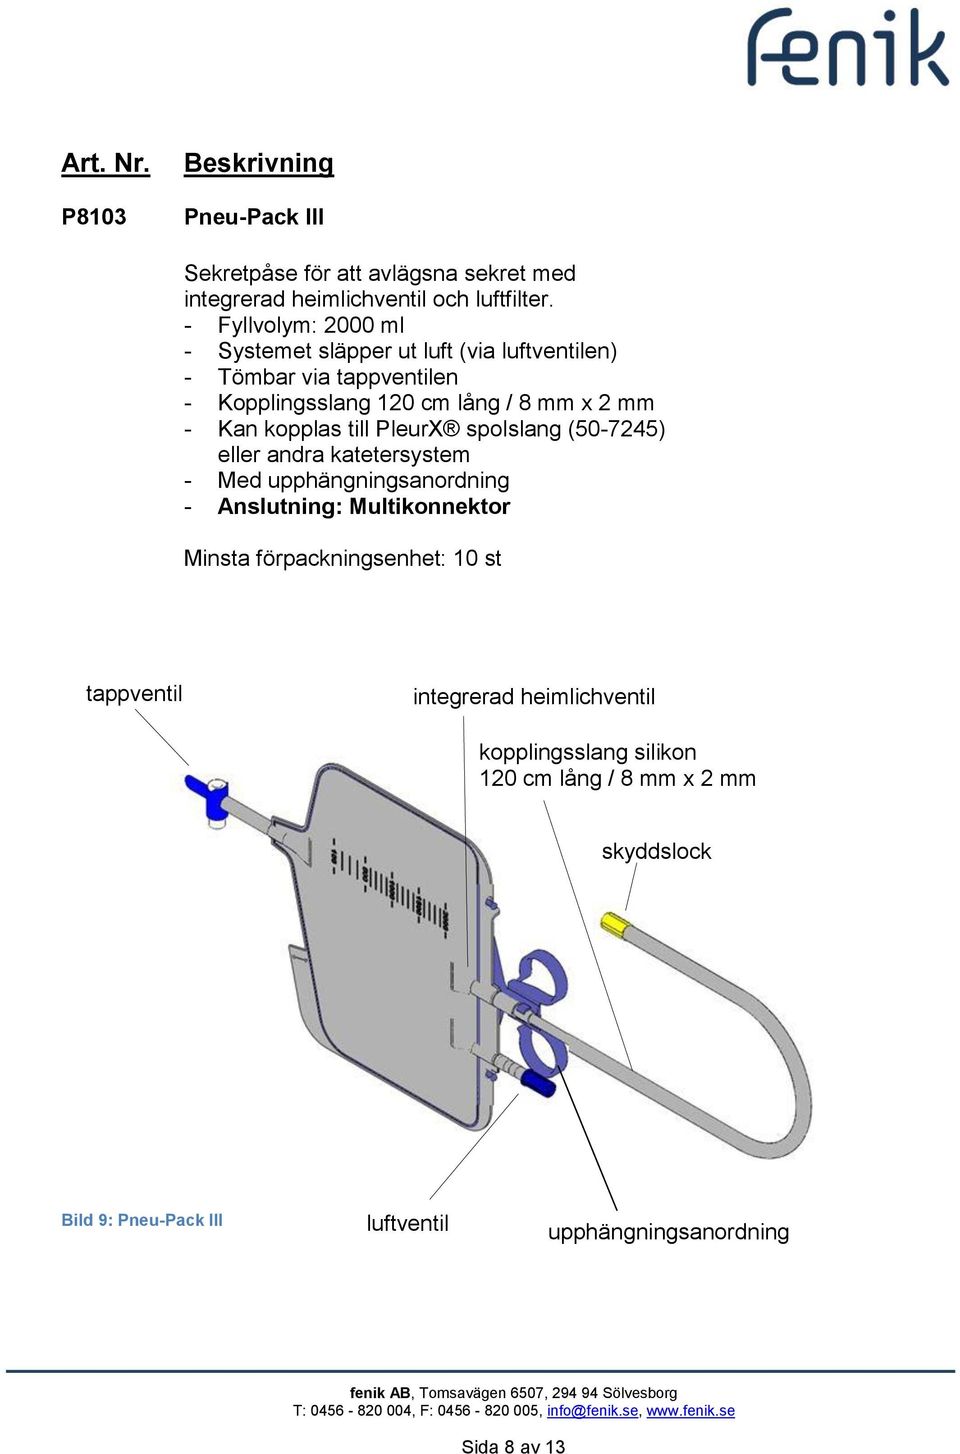 mm - Kan kopplas till PleurX spolslang (50-7245) eller andra katetersystem - Med upphängningsanordning - Anslutning: Multikonnektor